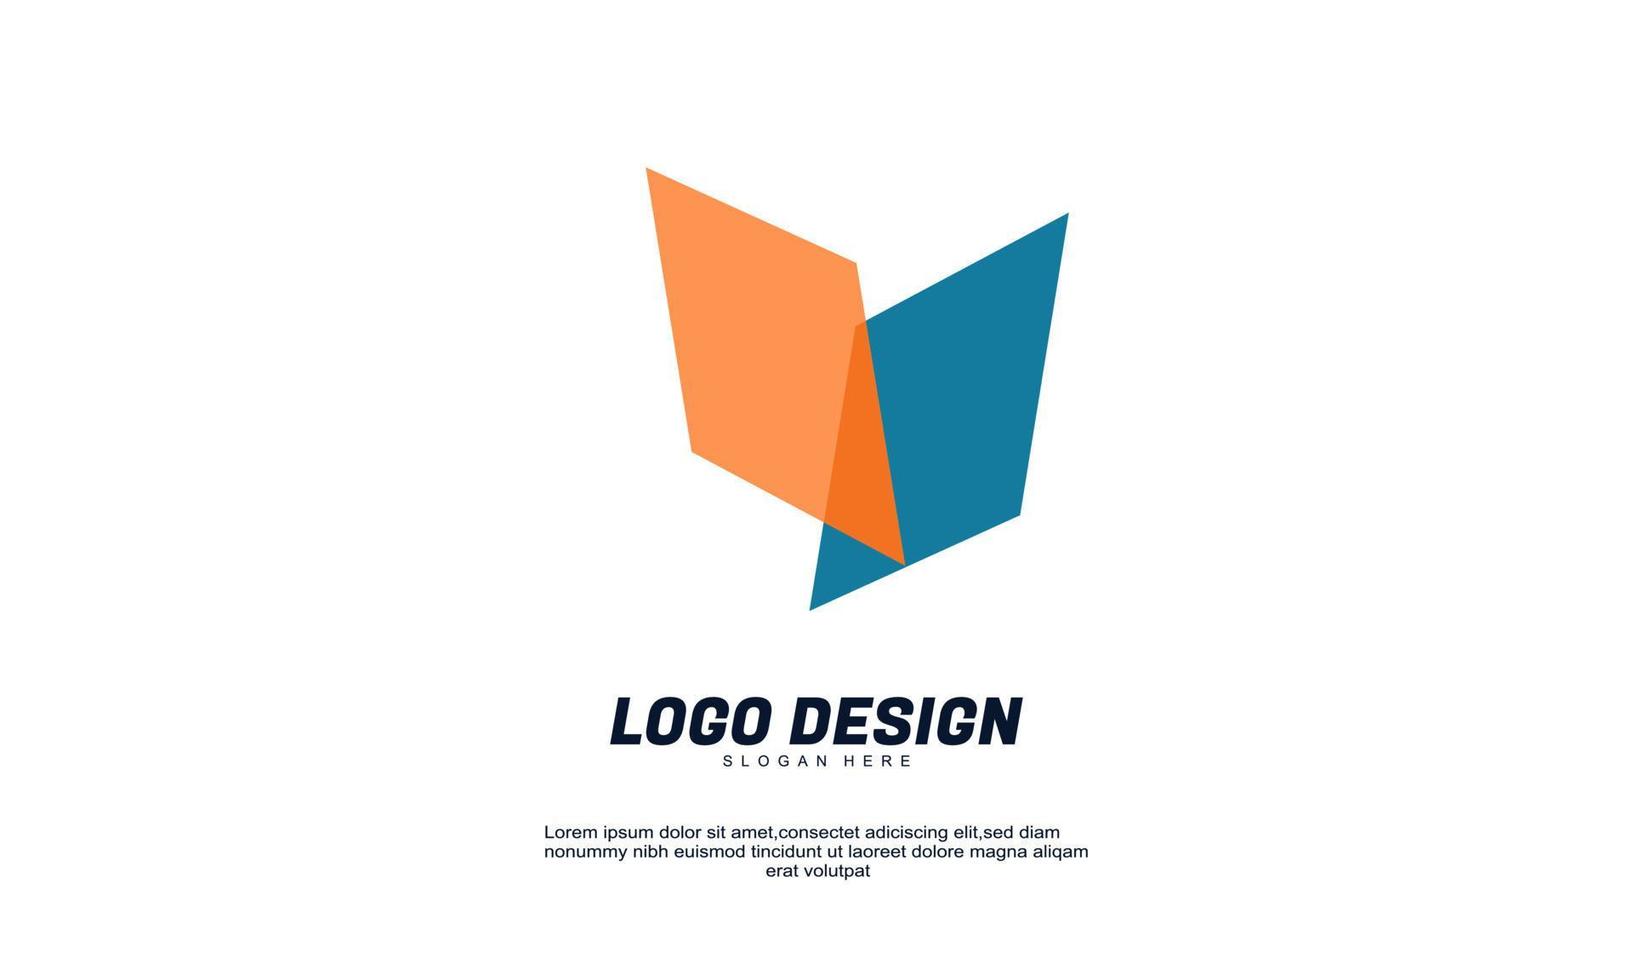 elemento de logotipo de diseño moderno creativo impresionante con plantilla de tarjeta de visita mejor para identidad y logotipos vector